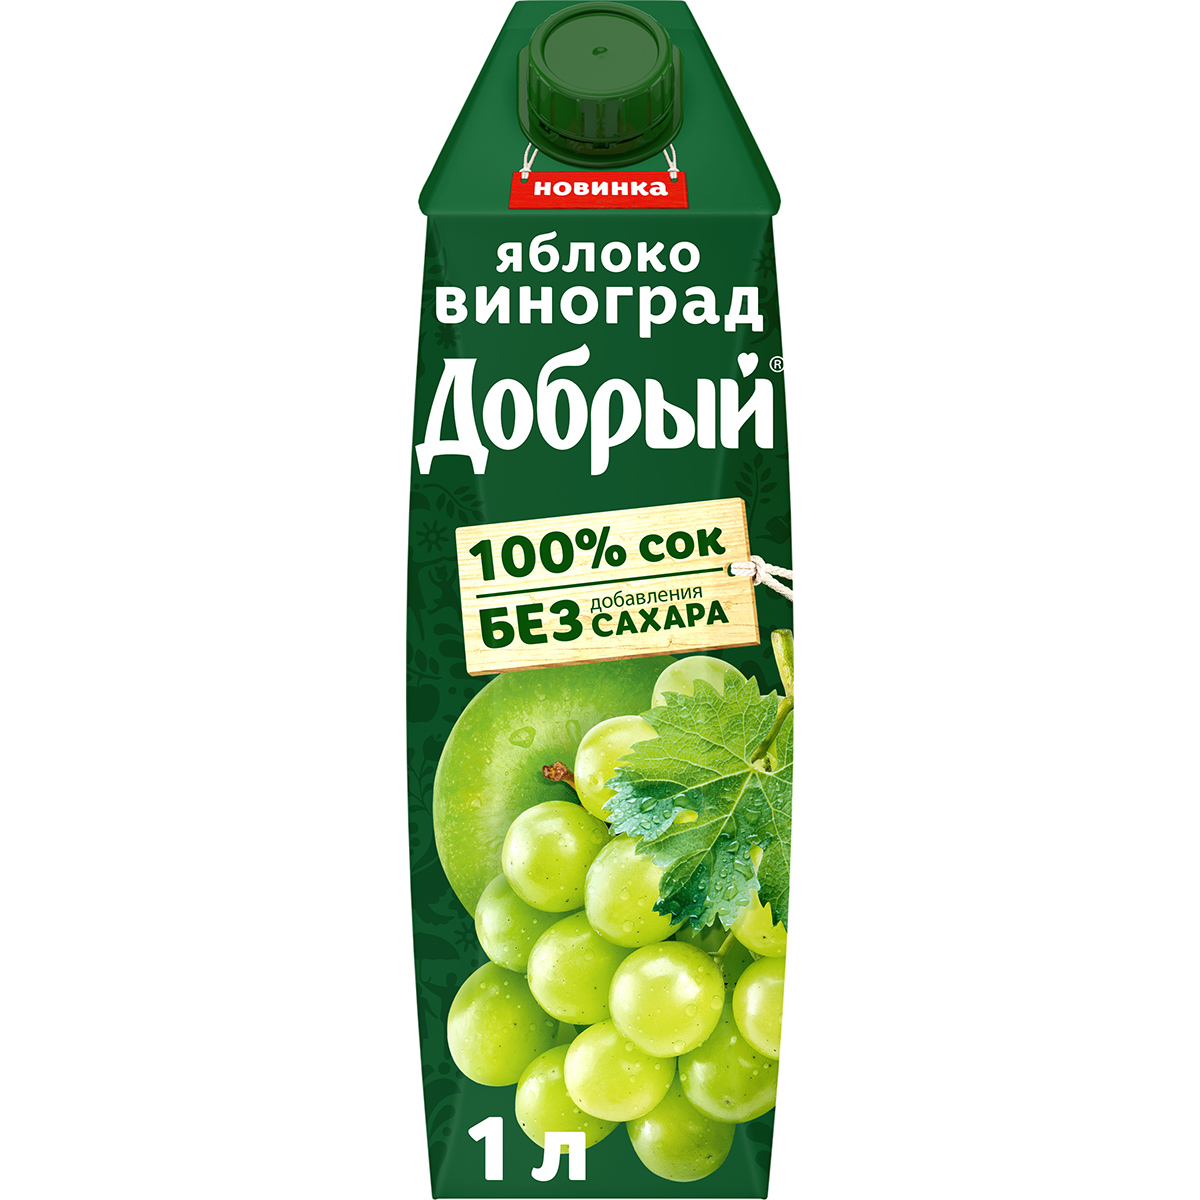 Сок Добрый Яблоко-виноград 1 л сок добрый active kid яблоко персик 0 2 л